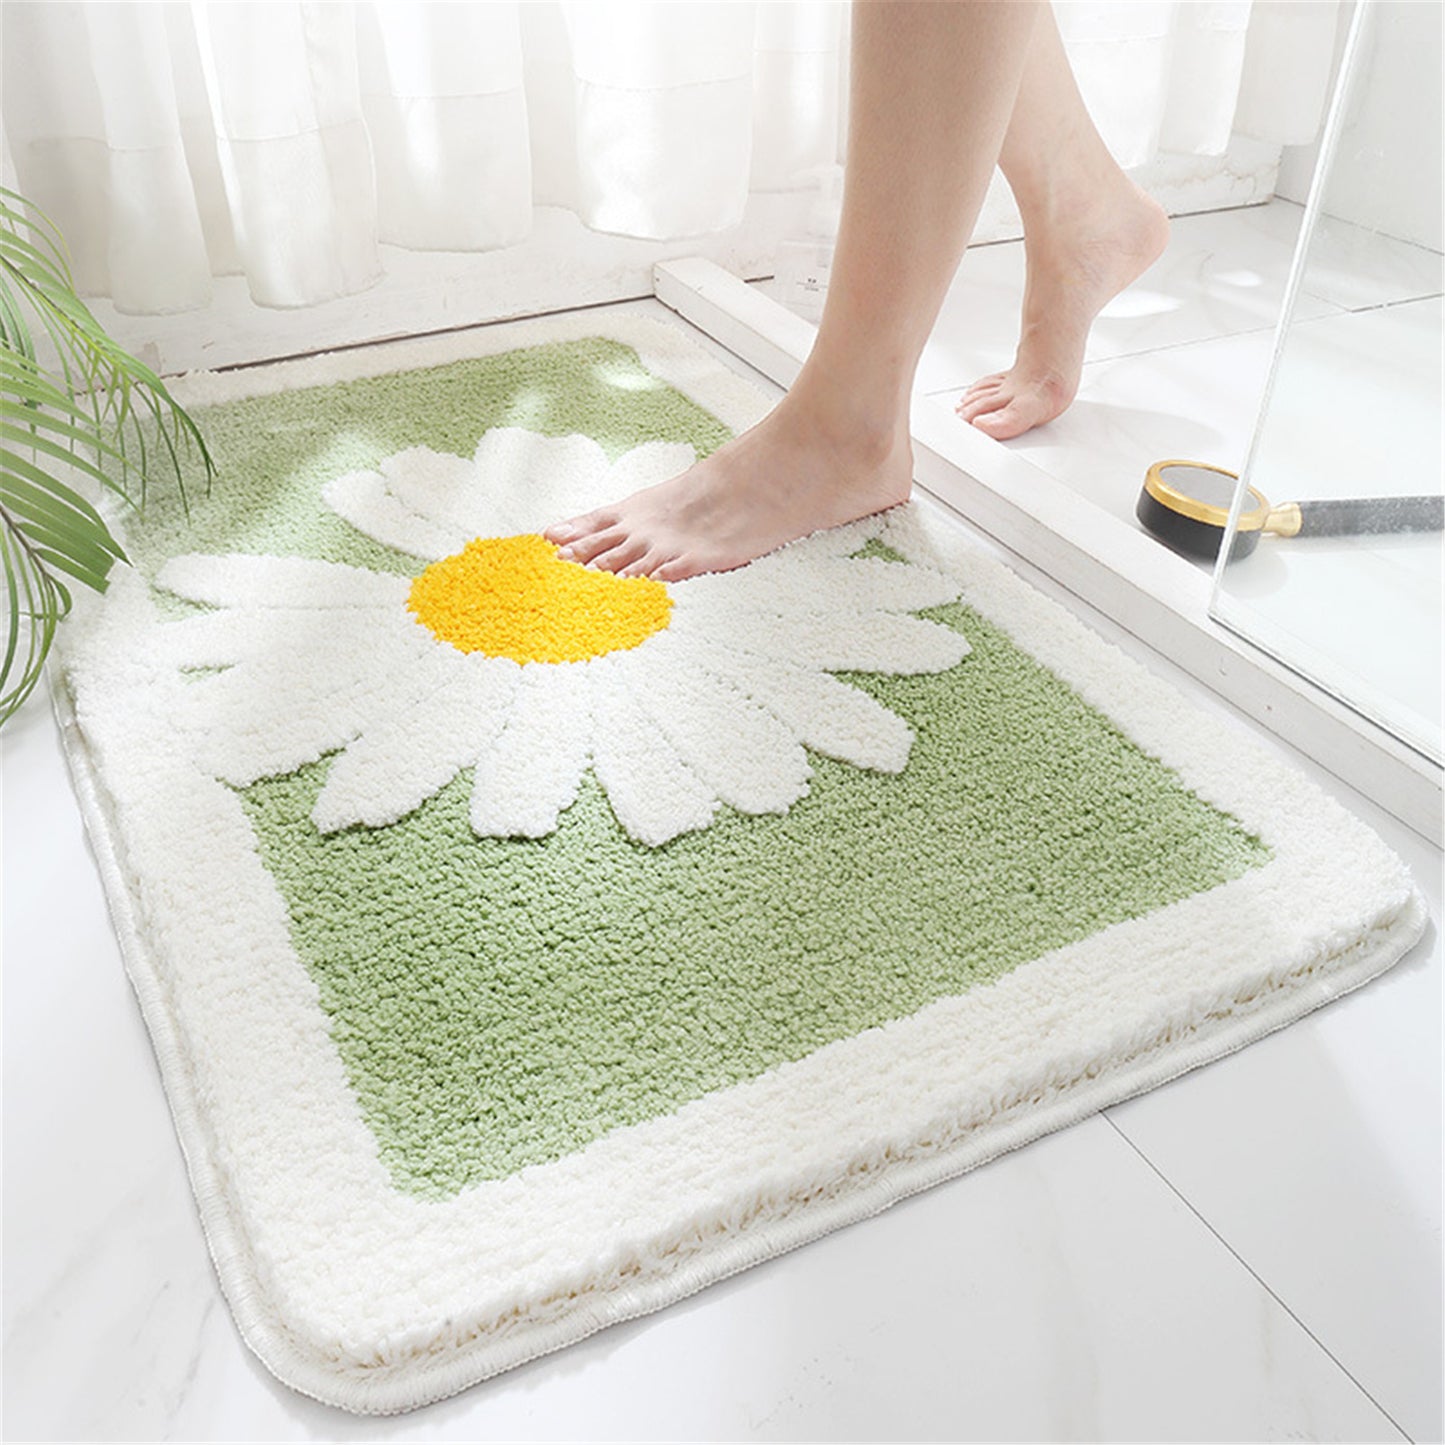 Daisy flower bath mat colorful cute bathroom decor